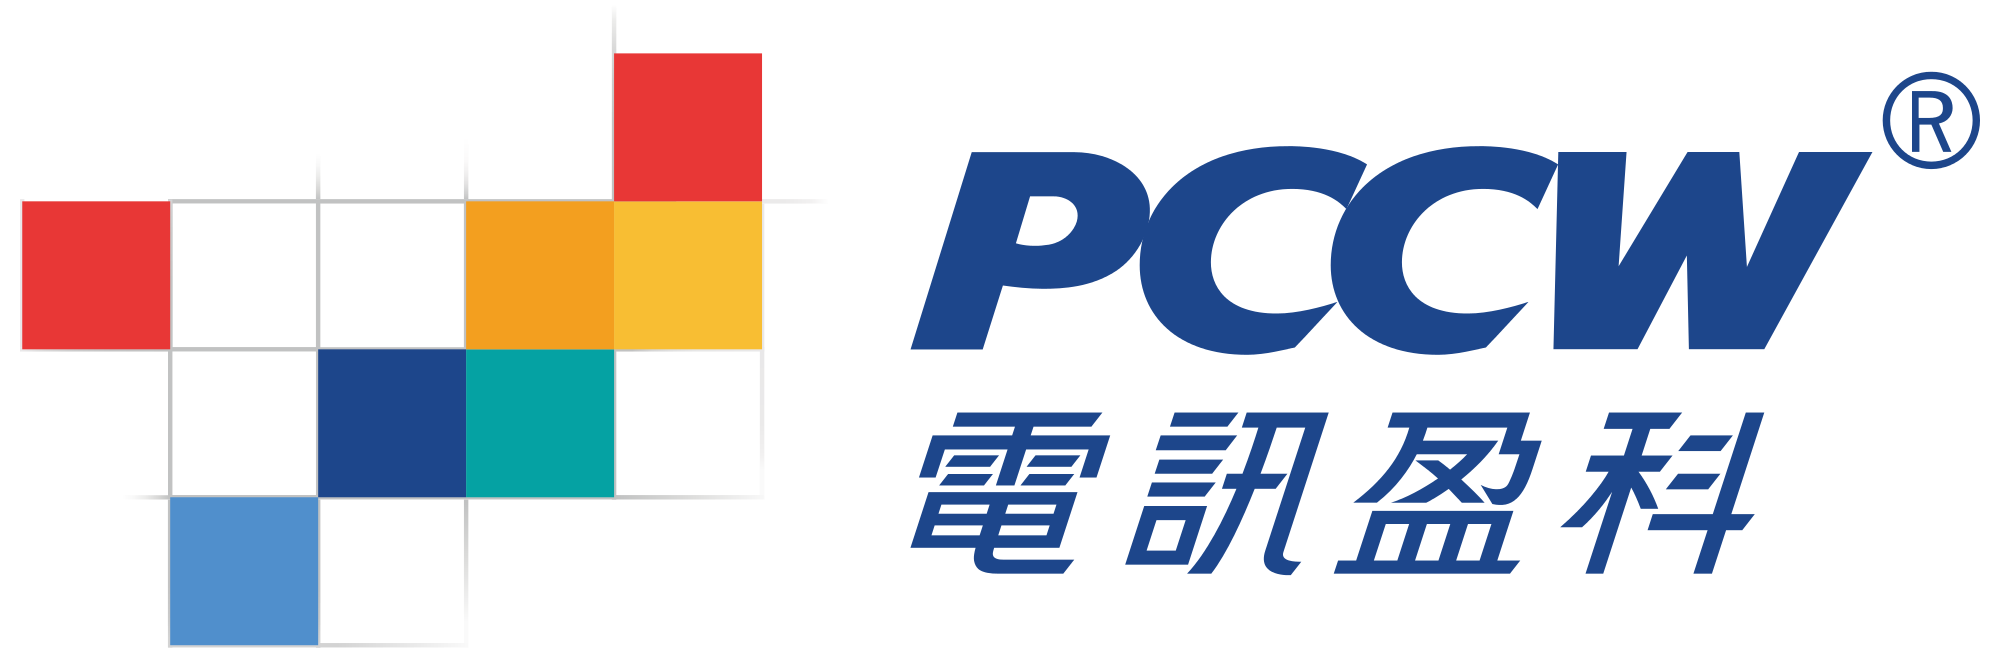 PCCW Brand Logo